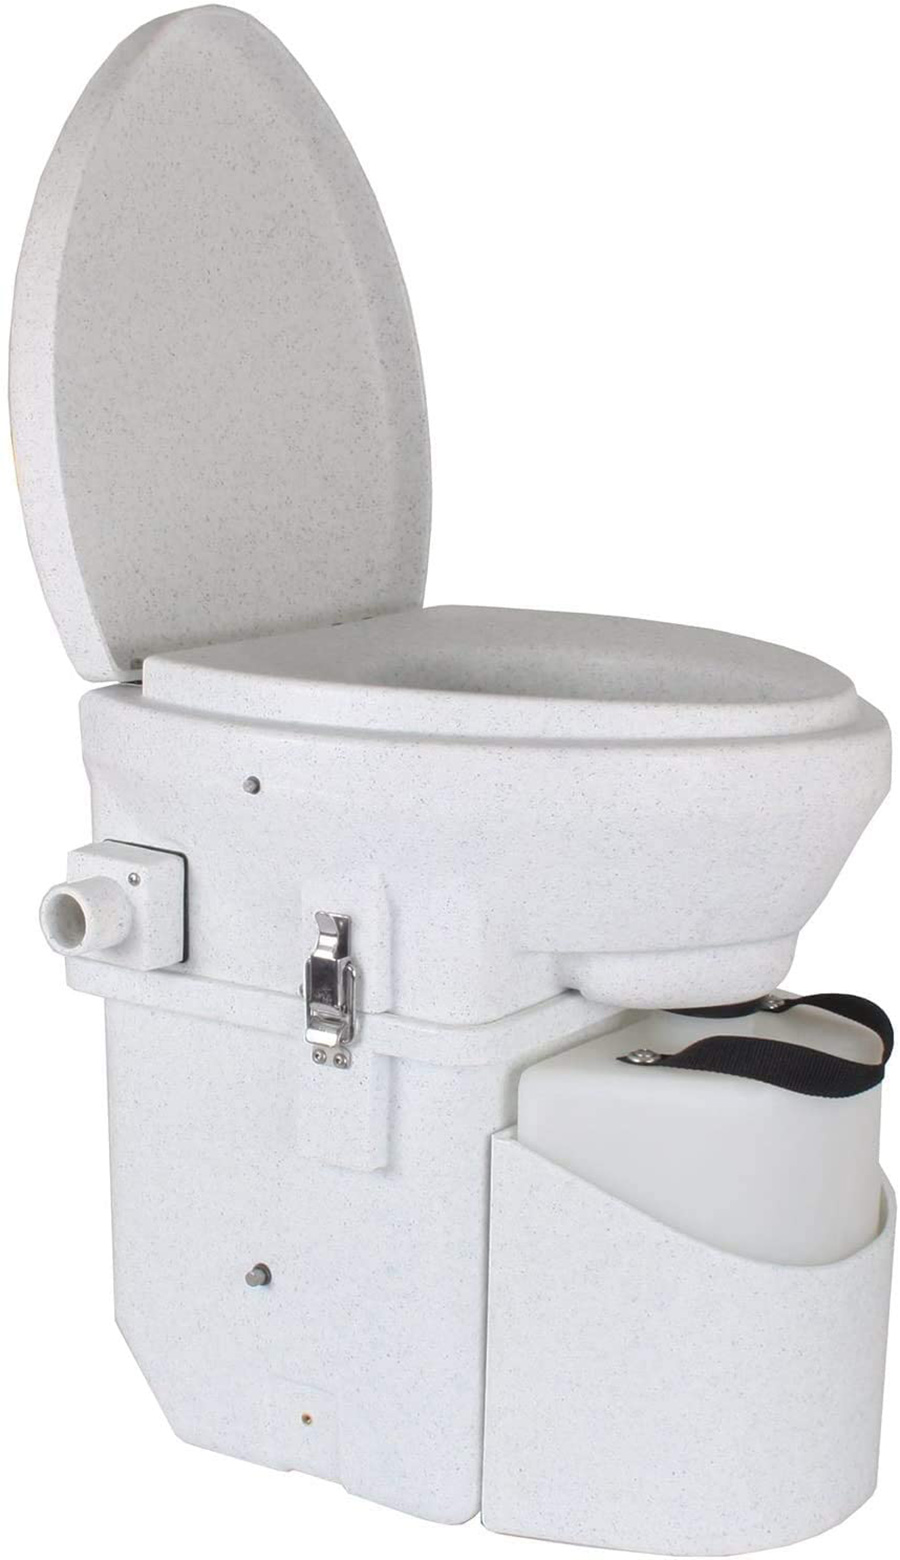 Elementary school escalate Unrelenting Ce este toaleta compost pentru pentru RV-uri - RvTravel